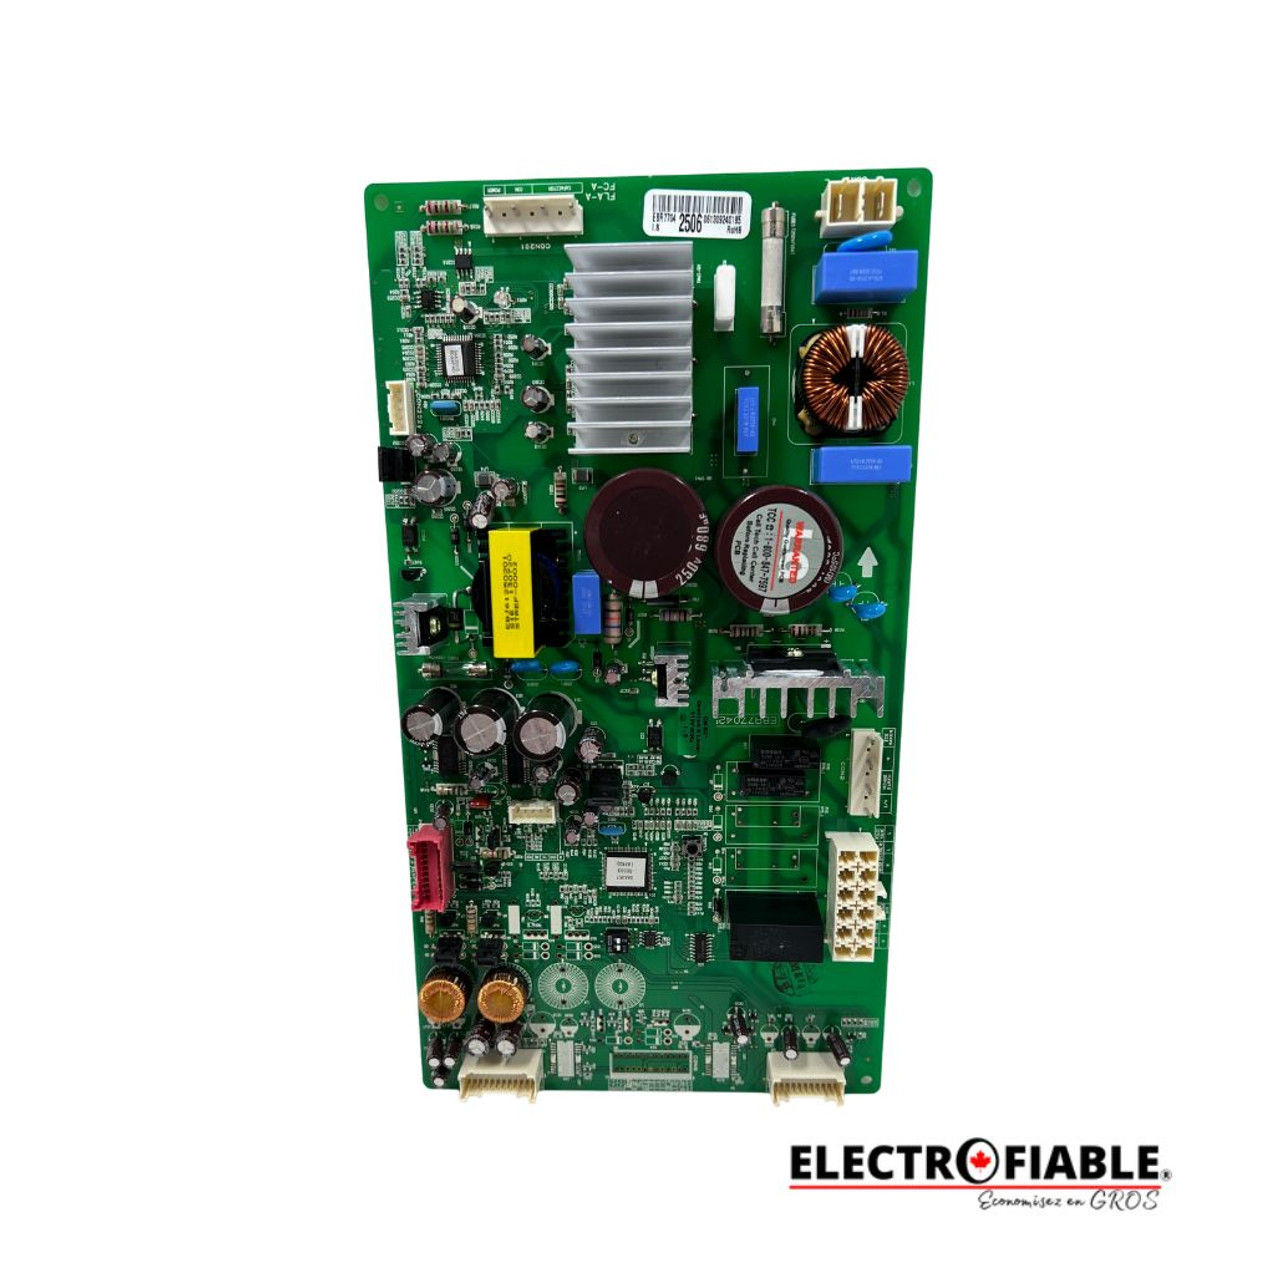 EBR77042506 LG Refrigerator Electronic Control Board